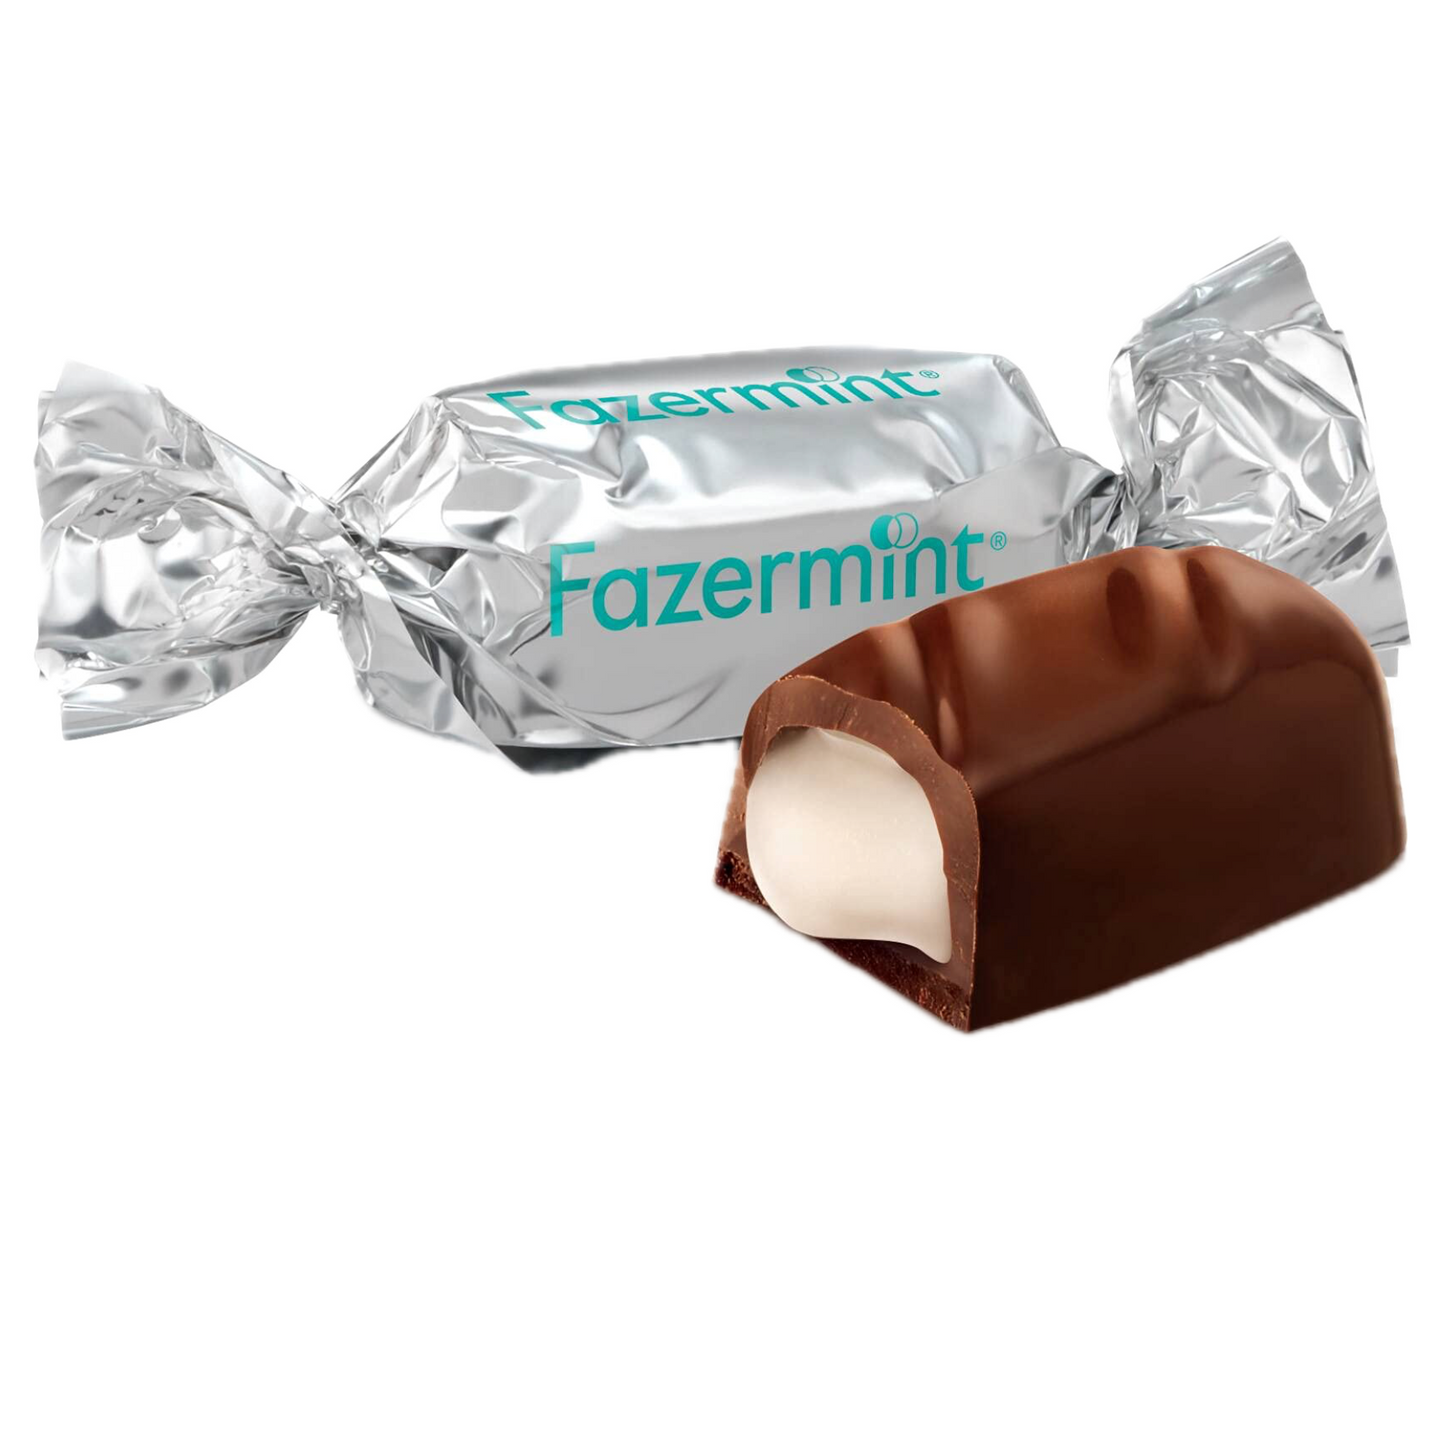 FAZERMINT CHOCOLATE - KARL FAZER